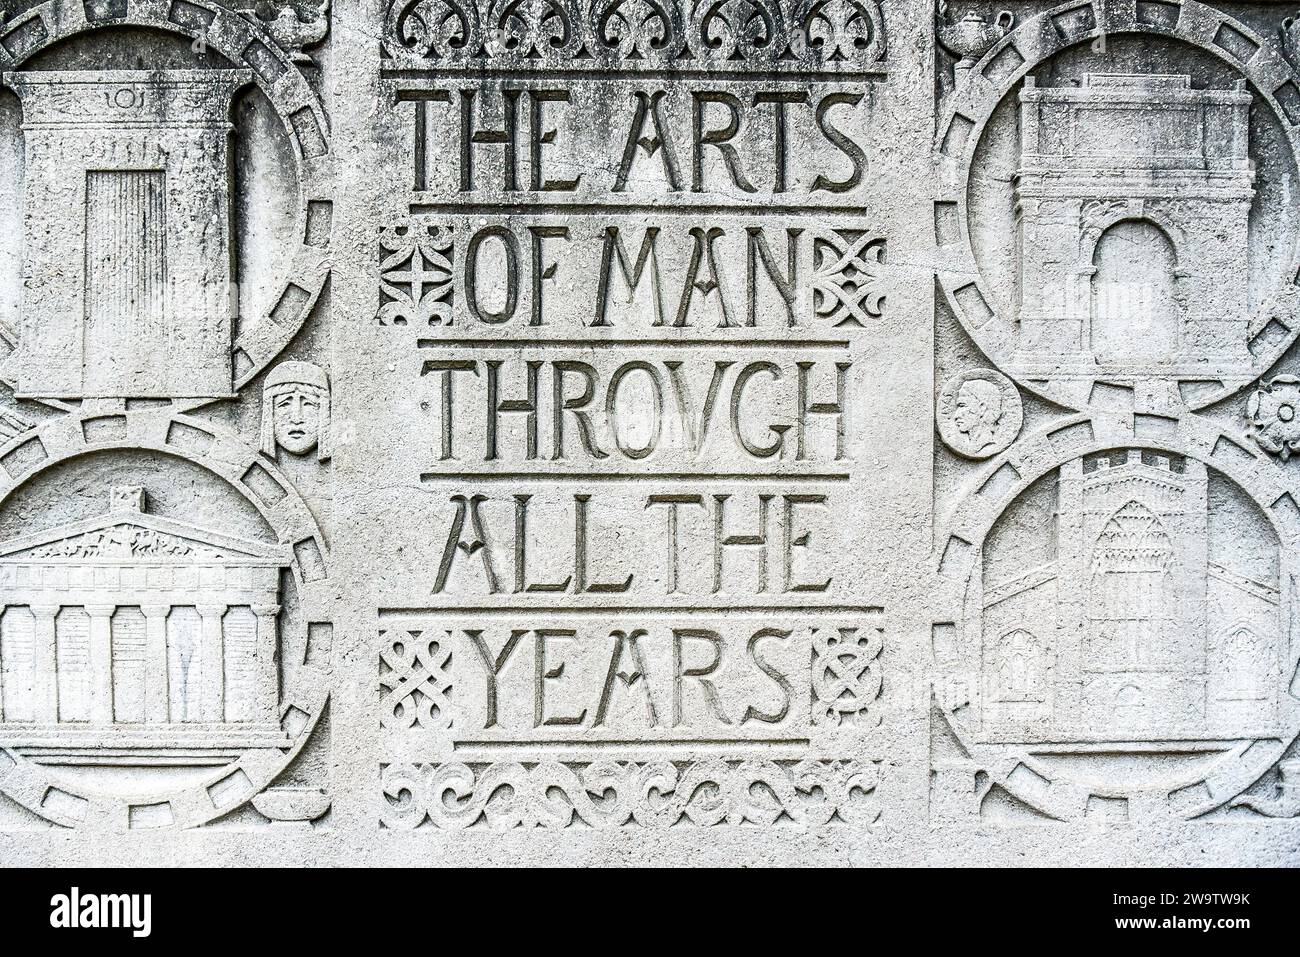 Toronto, Ontario, Canada-21 agosto 2016: Dettagli incisi sull'esterno del Royal Ontario Museum, ROM. Legge 'le arti dell'uomo Attraverso Gli Anni'. Foto Stock